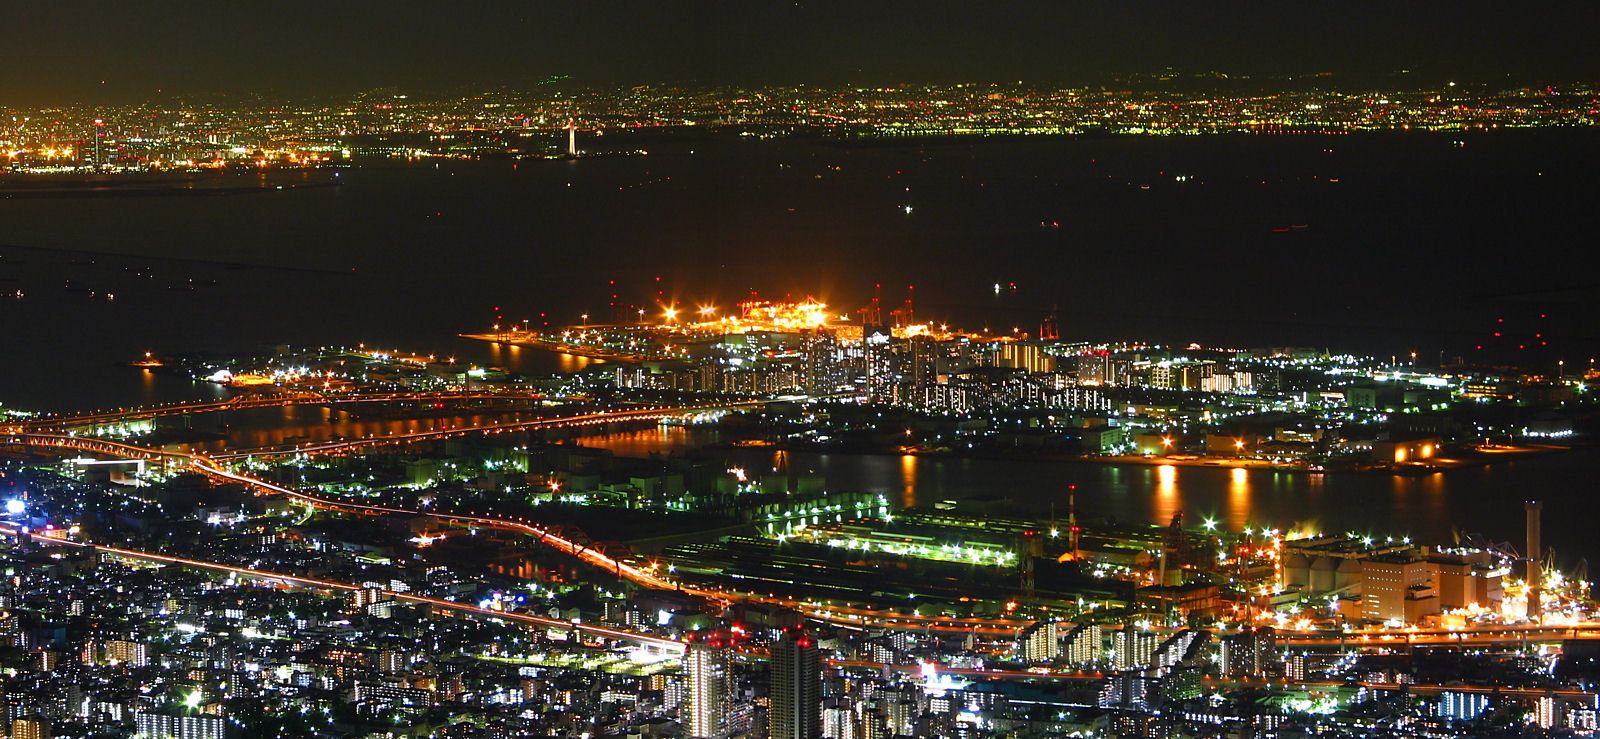 摩耶山掬星台の夜景 神戸1000万ドルの夜景 壁紙写真集 無料写真素材